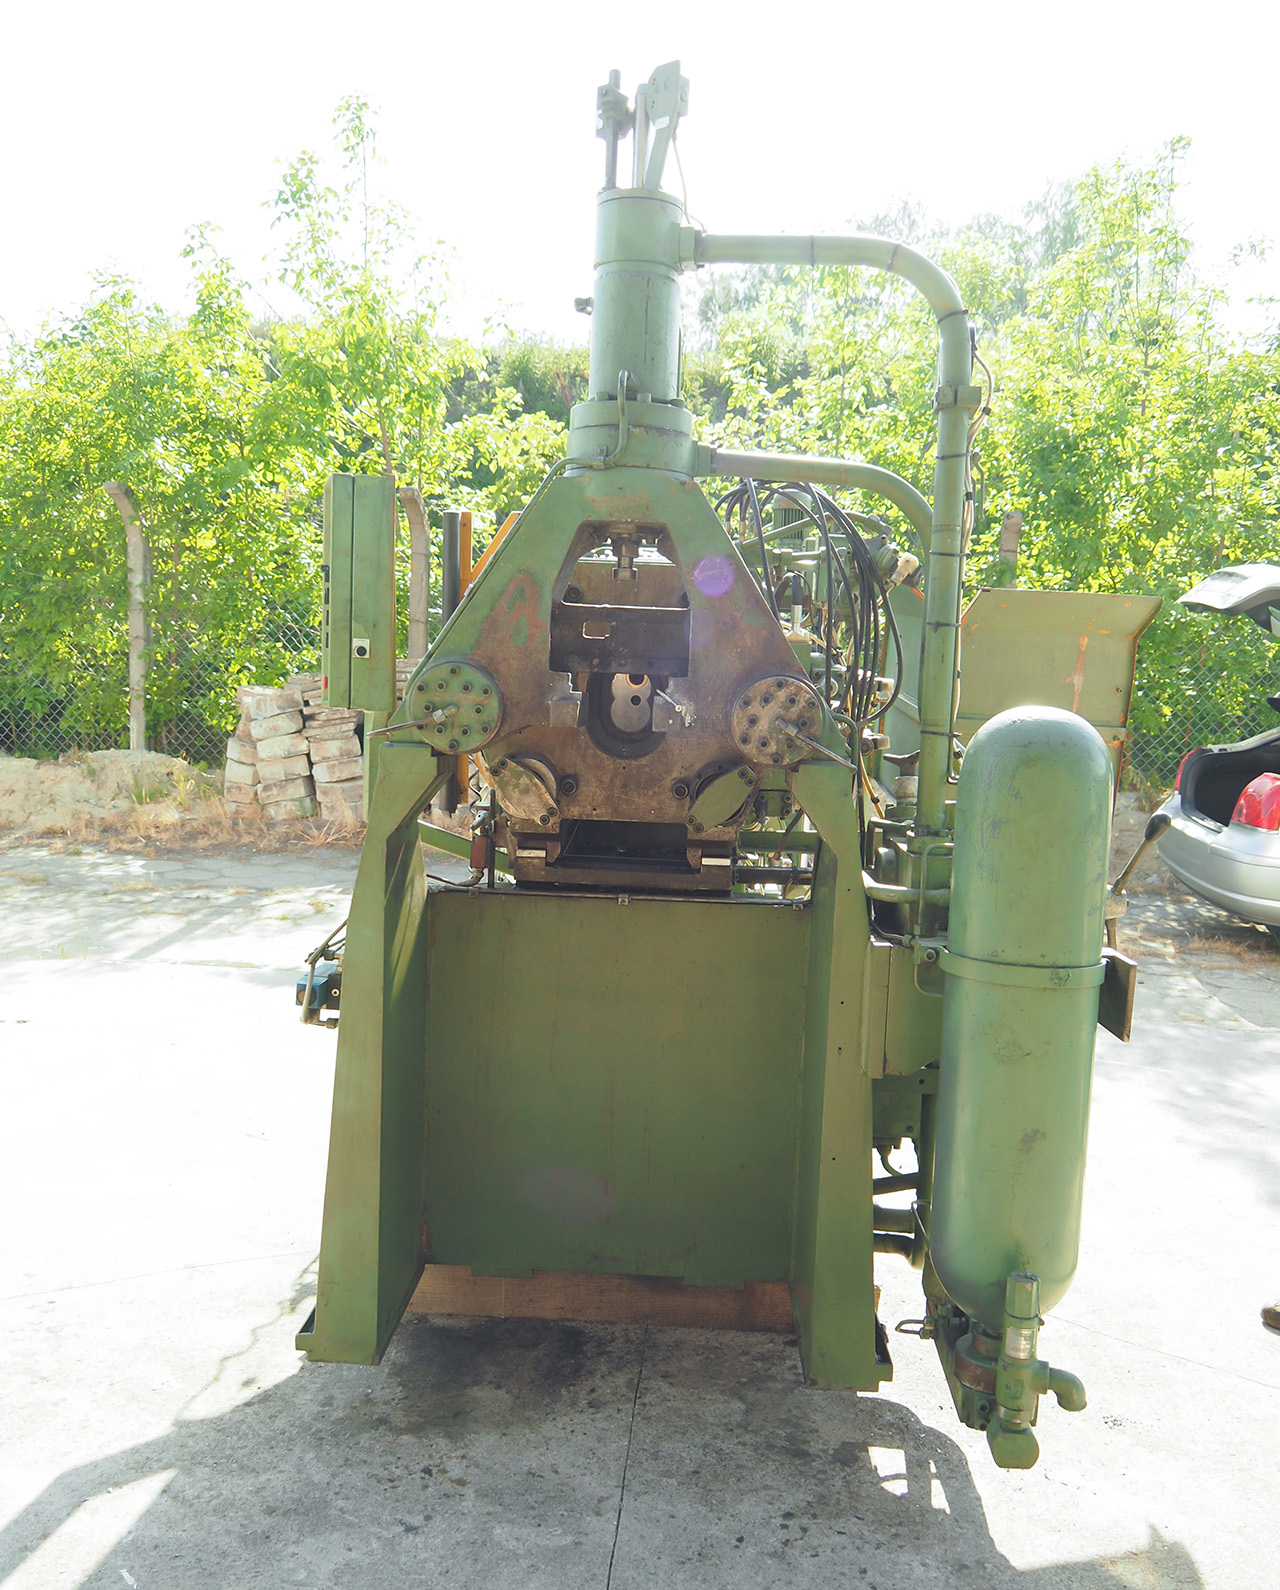 Italpresse AZ 90 maszyna odlewnicza gorącokomorowa WK1395, używana